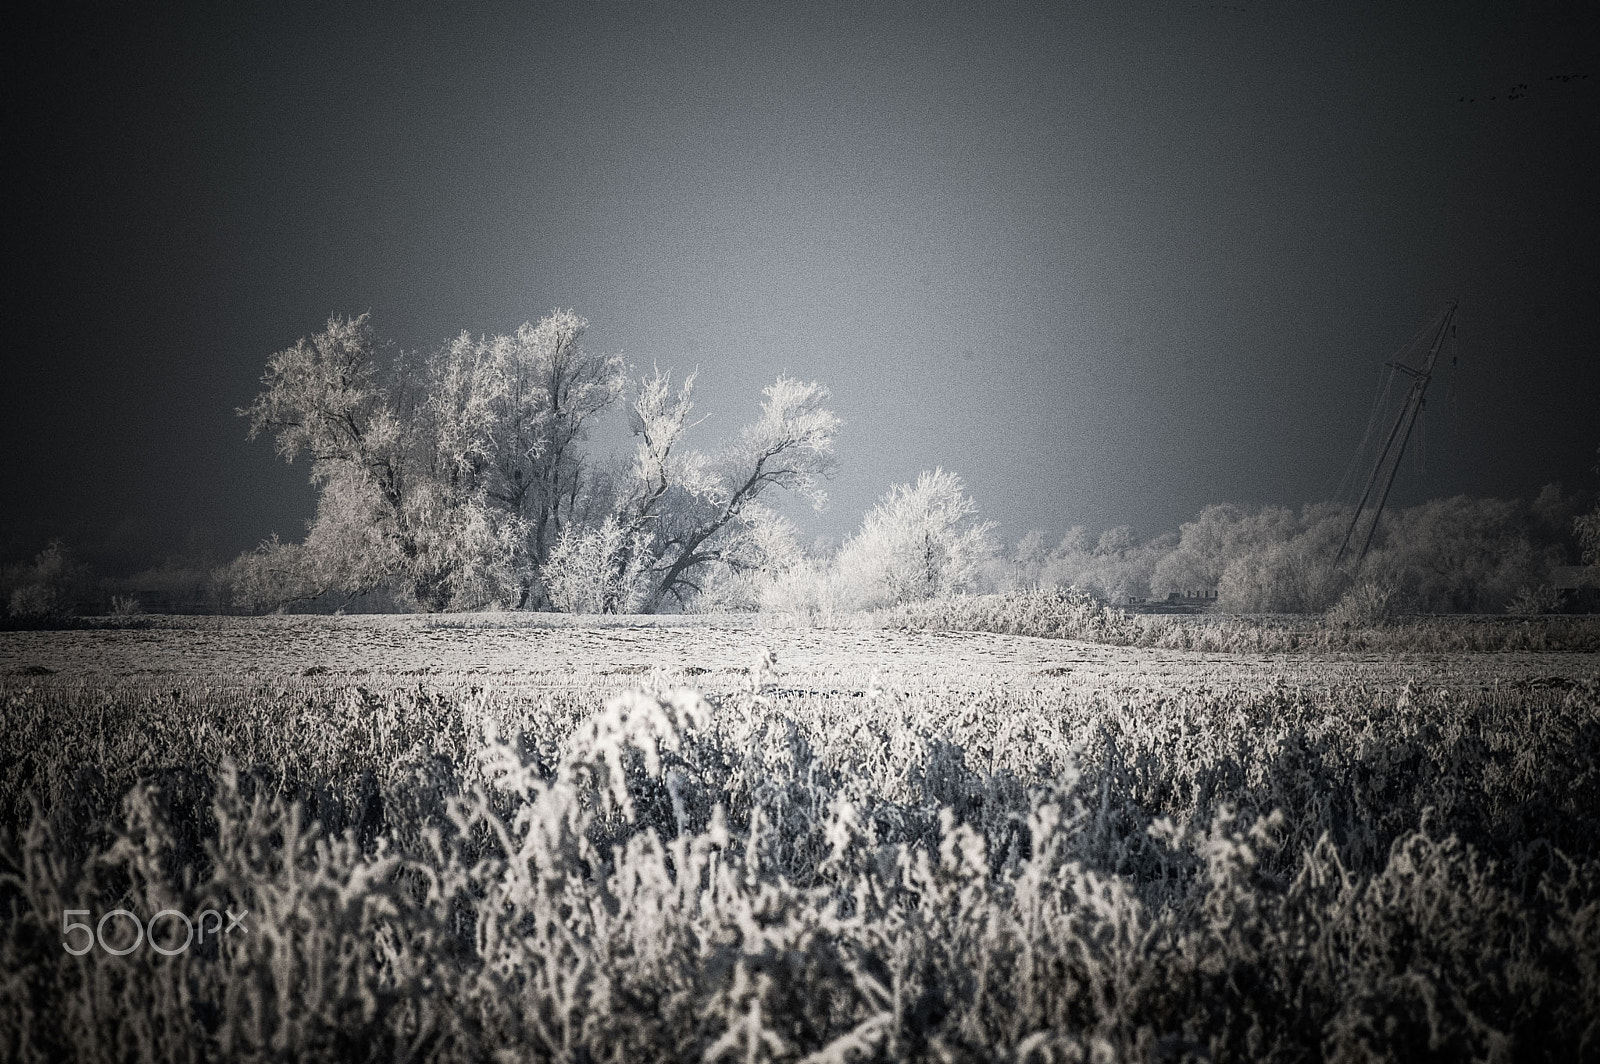 Nikon D70s + AF Zoom-Nikkor 75-240mm f/4.5-5.6D sample photo. Frozen winter landscape photography